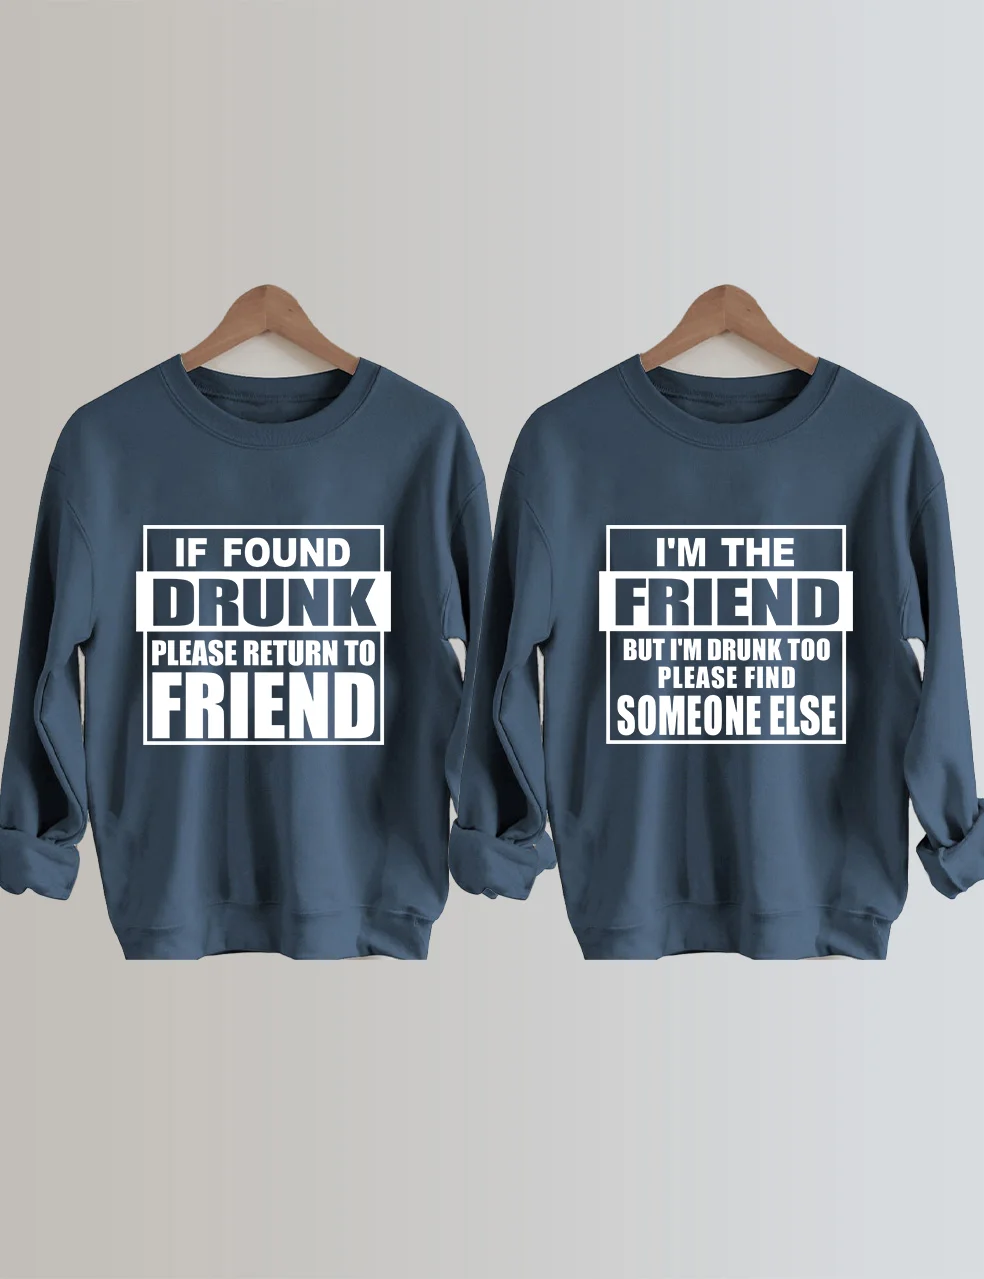 If Found Drunk Please Return To Friend Sweatshirt